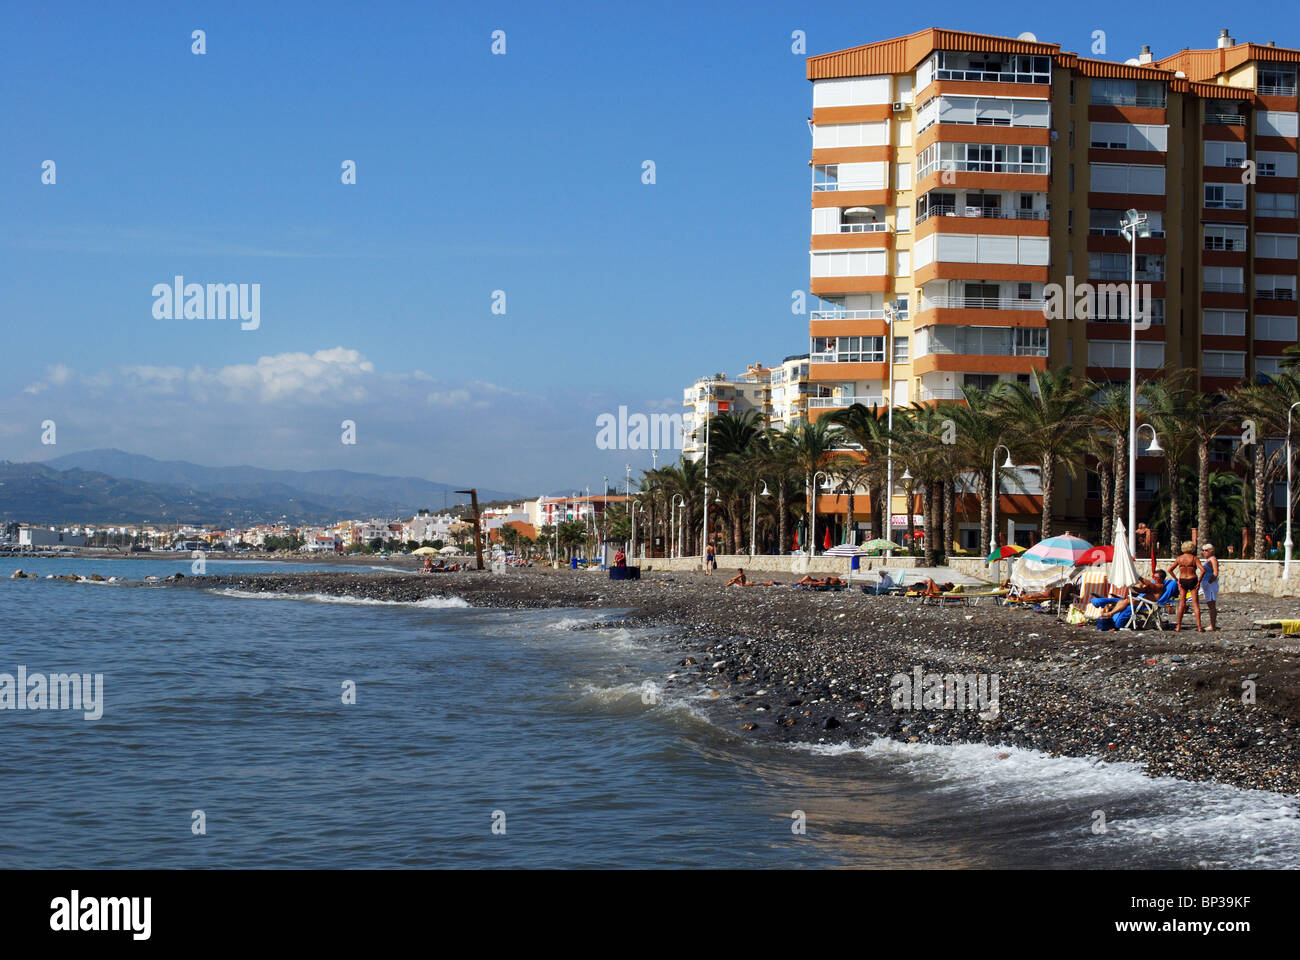 View of the beach and coastline, Lagos, Algarrobo Costa, Costa del Sol, Malaga Province, Andalucia, Spain, Western Europe. Stock Photo